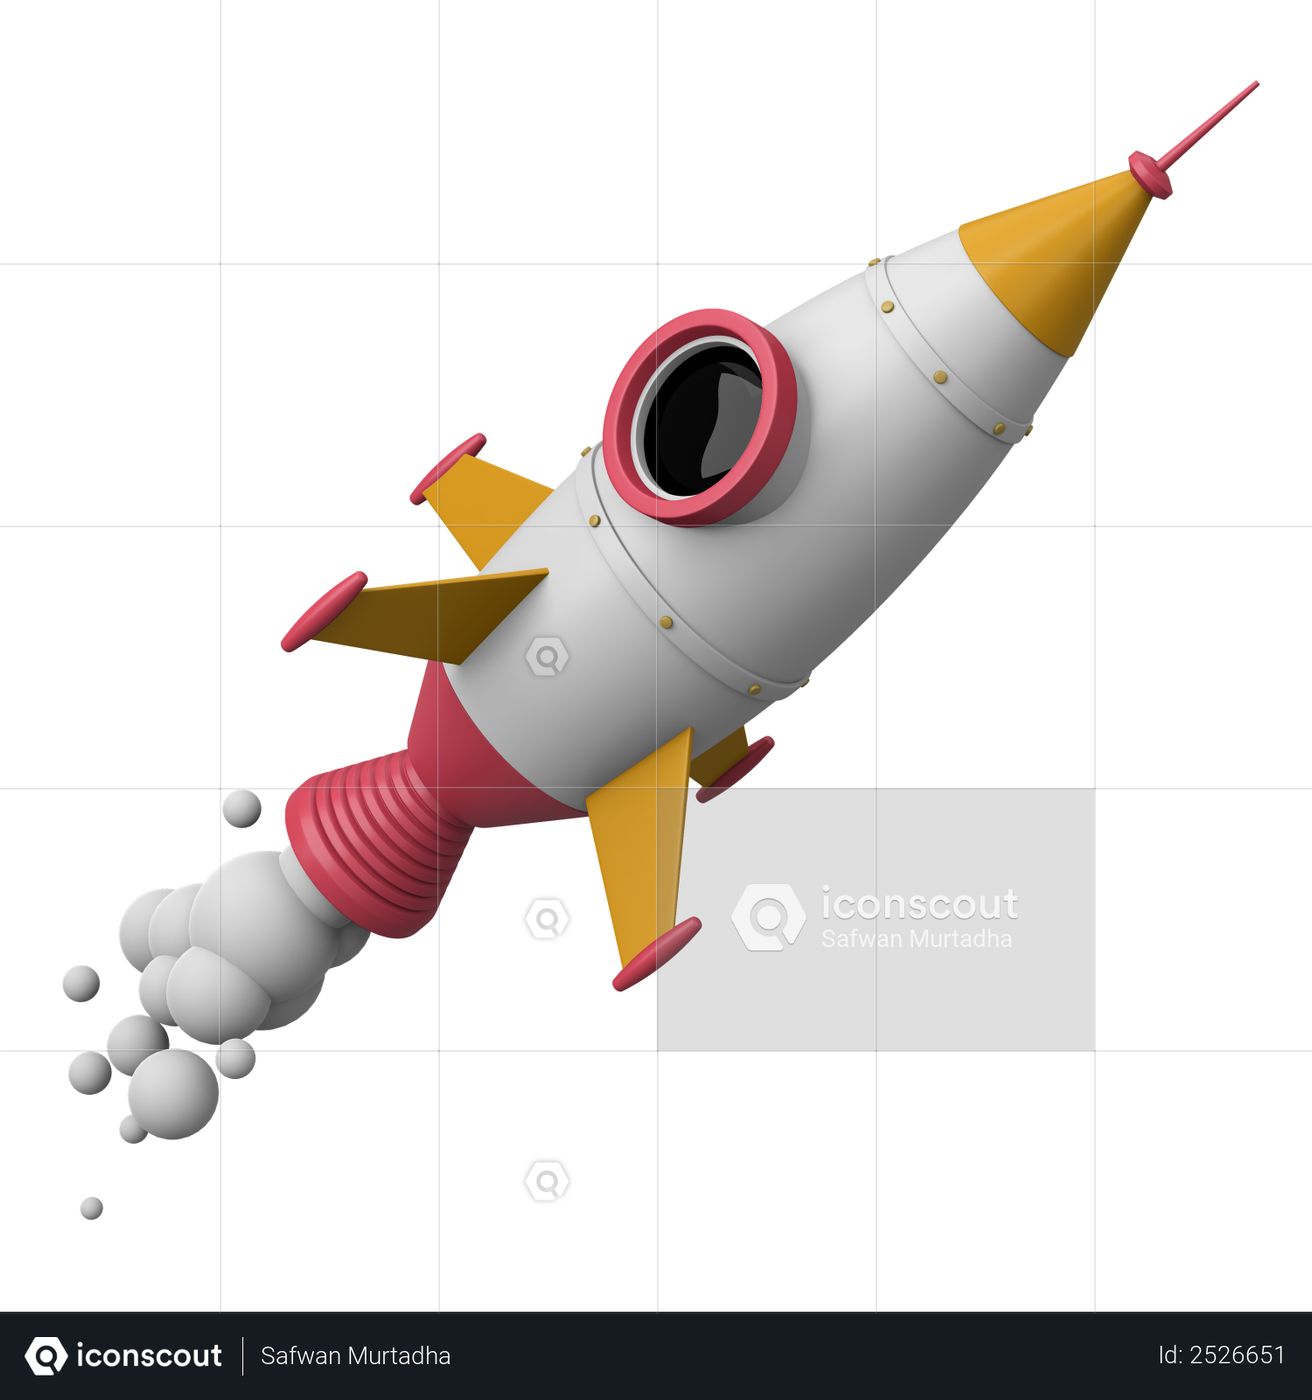 Premium Flying Rocket 3D Illustration download in PNG, OBJ or Blend format